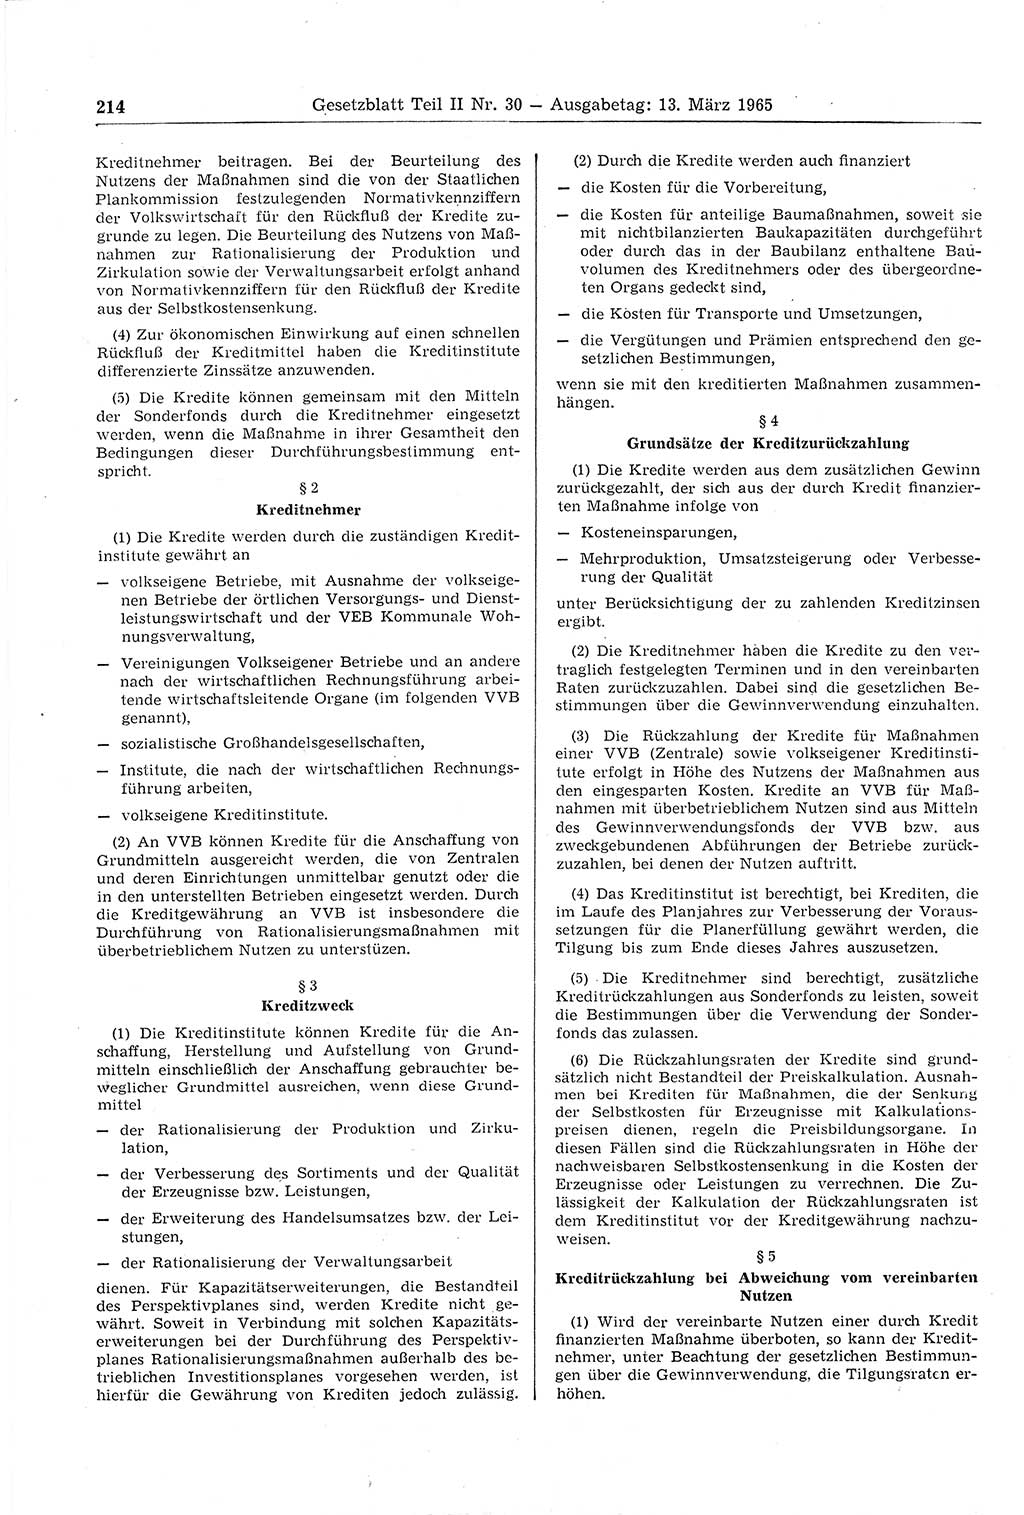 Gesetzblatt (GBl.) der Deutschen Demokratischen Republik (DDR) Teil ⅠⅠ 1965, Seite 214 (GBl. DDR ⅠⅠ 1965, S. 214)